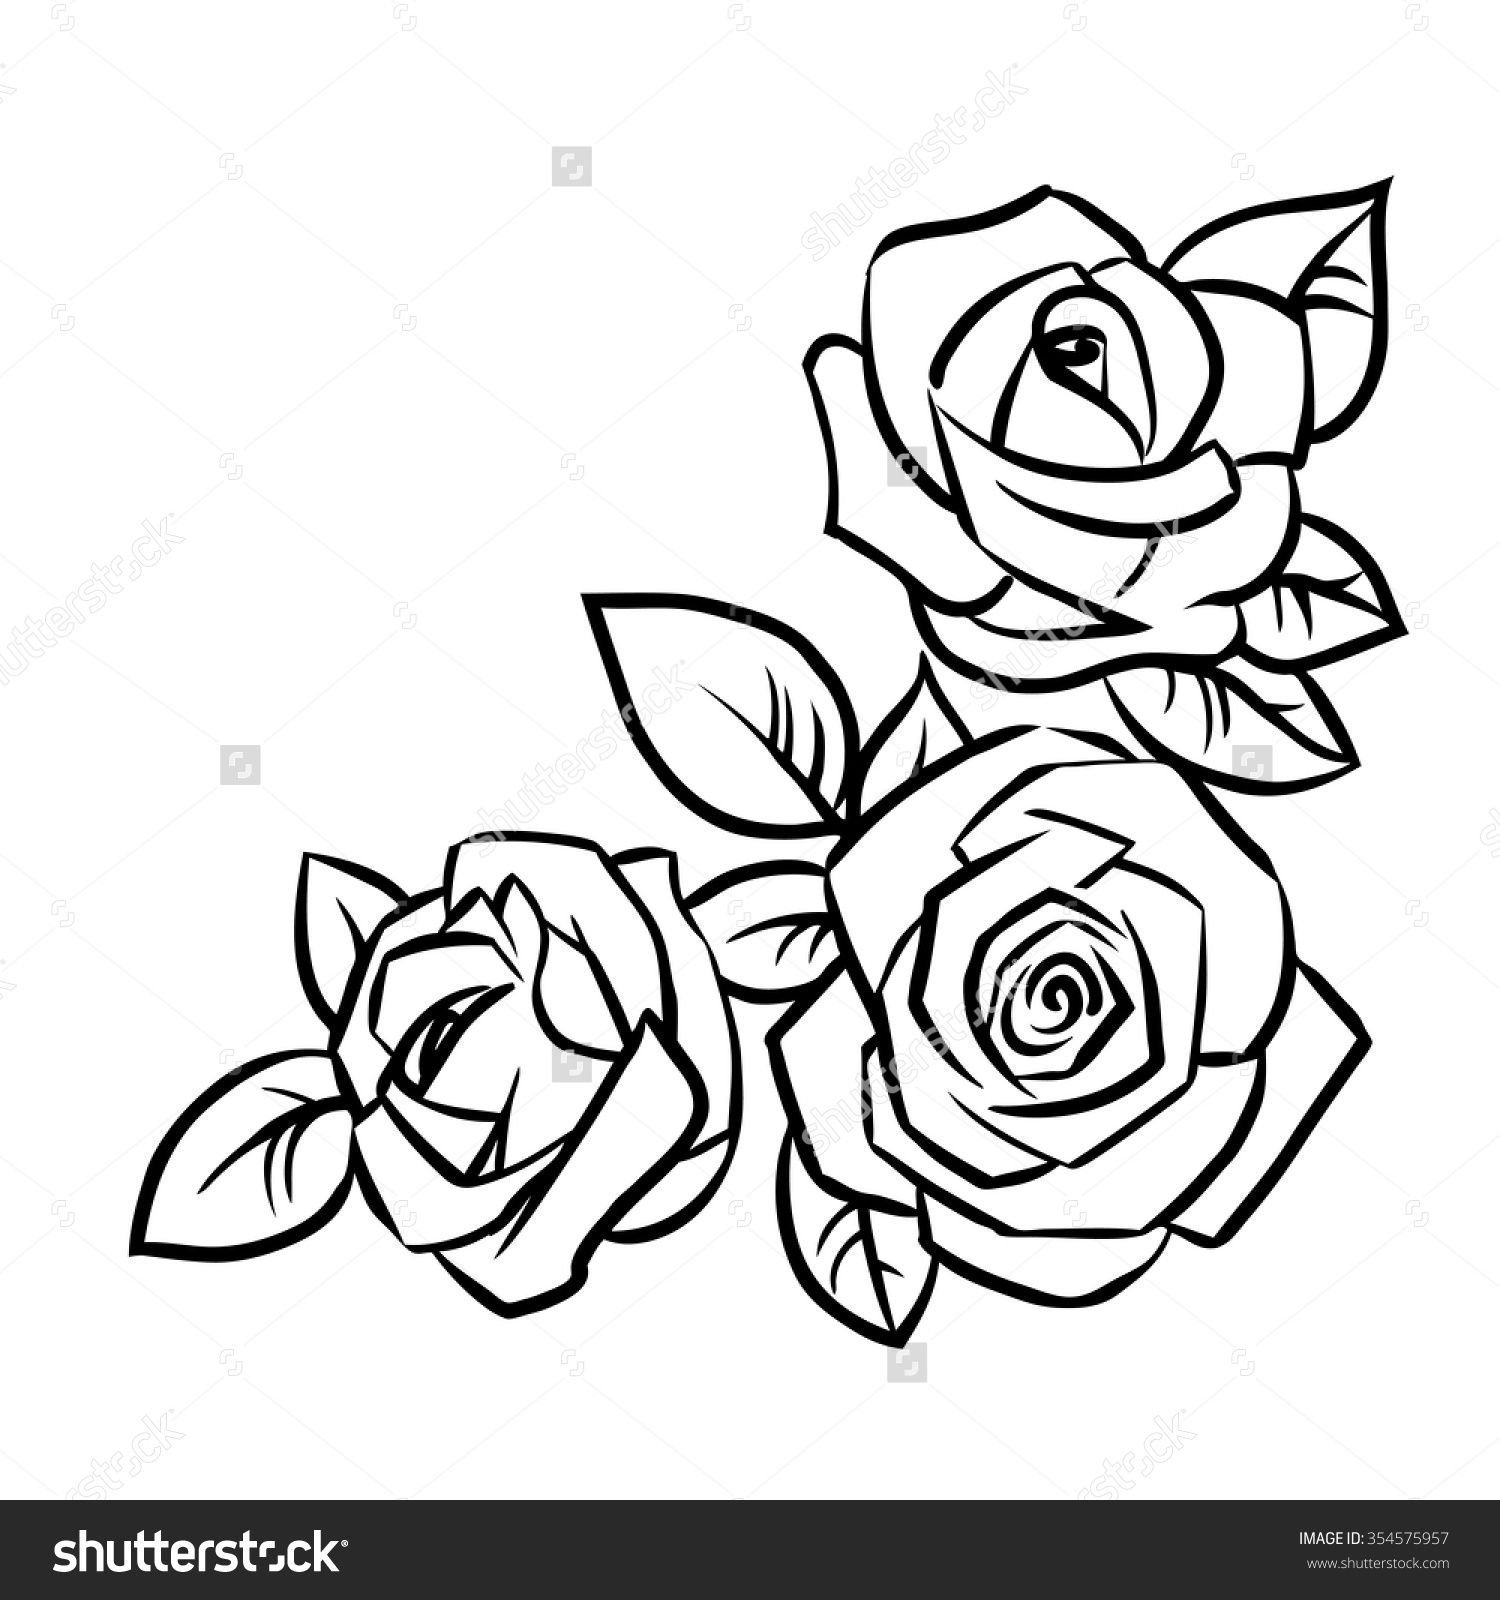 Розы карандашом на прозрачном фоне фото